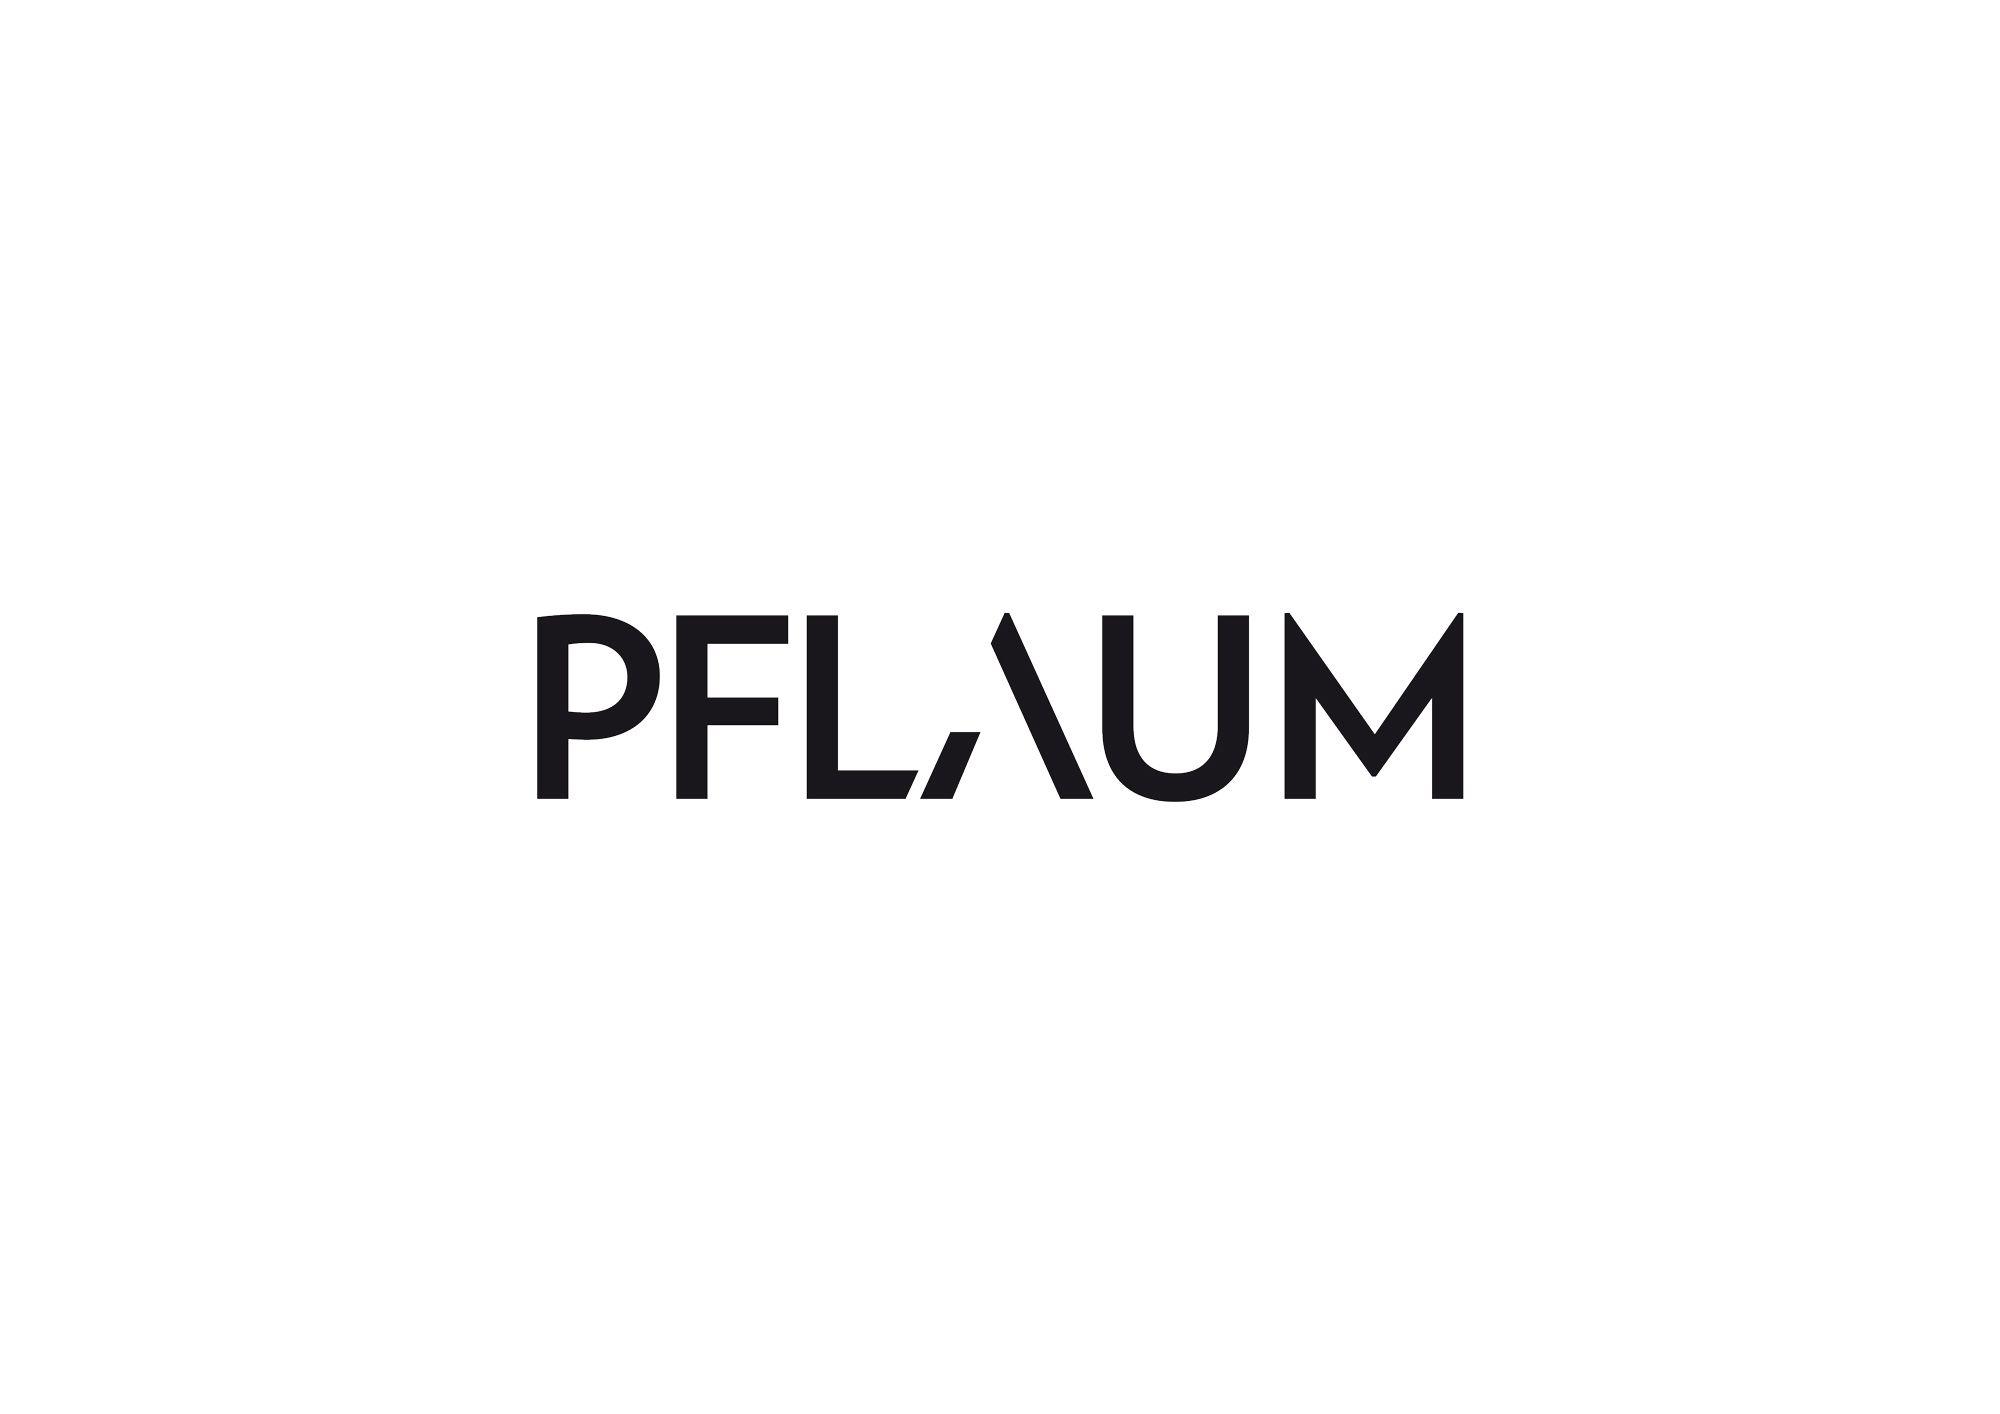 Pflaum Logo - Pflaum Verlag - Logotype - Sebastian Wolter Design #logotype #icon ...